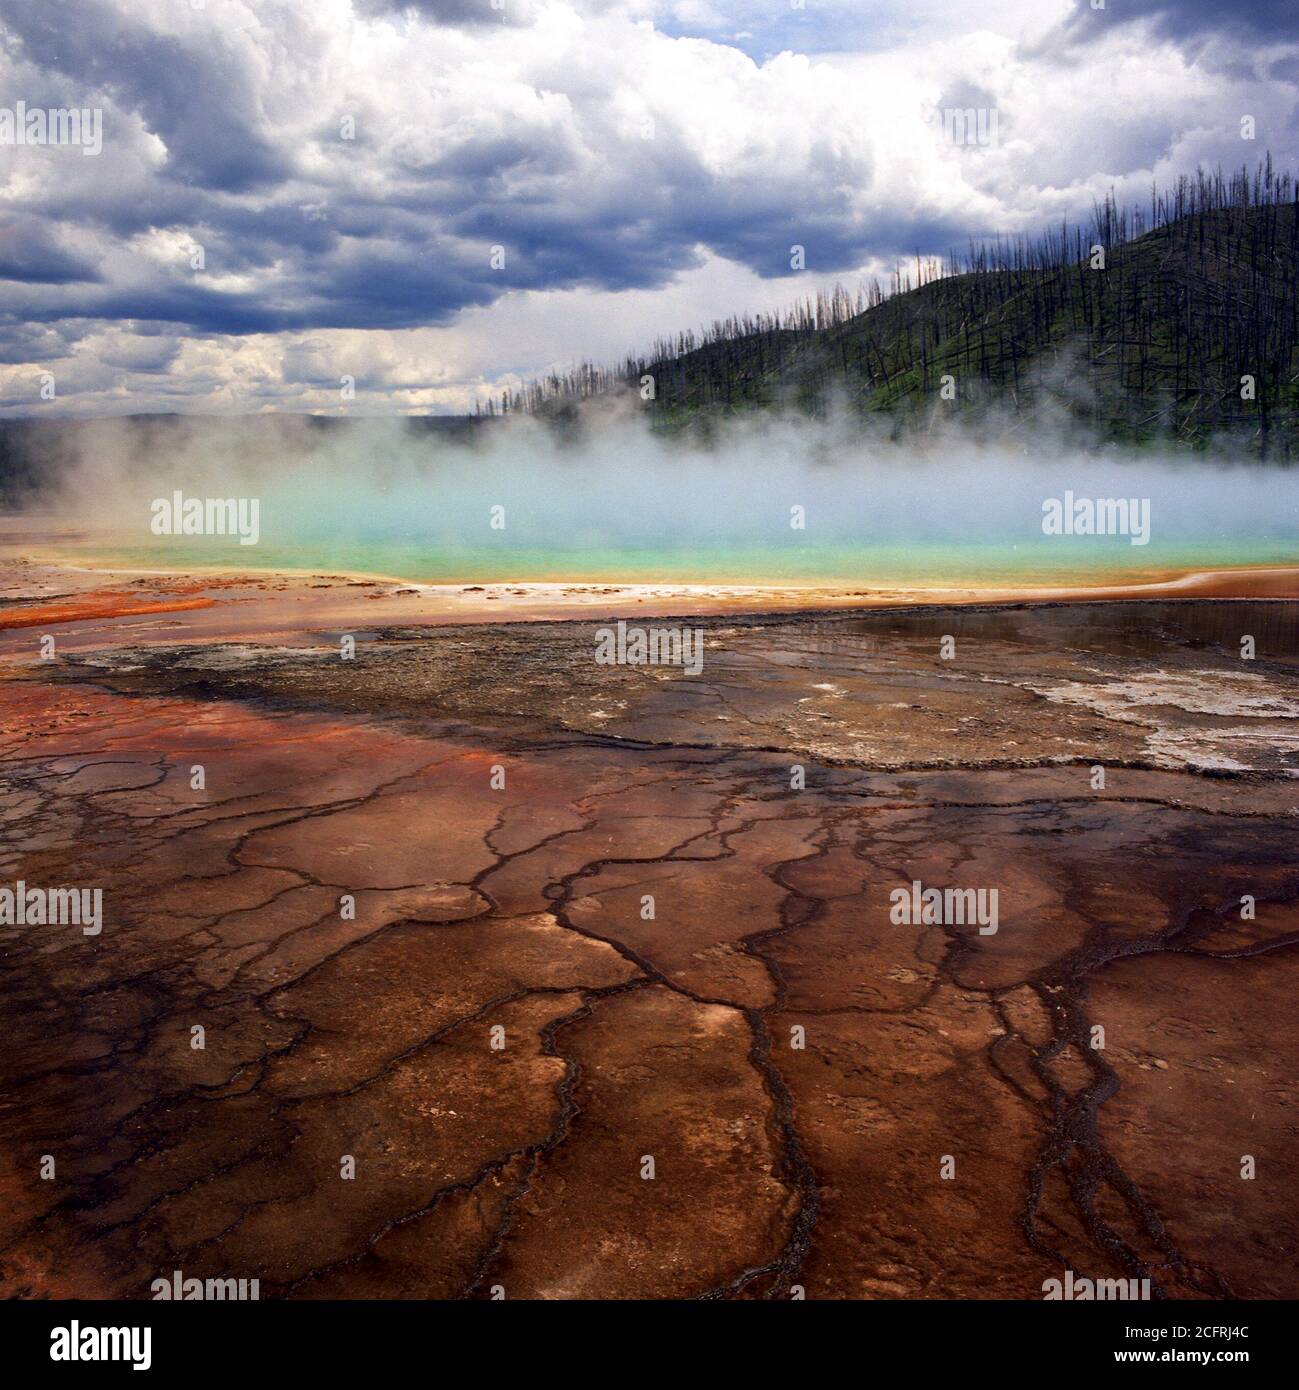 Riesiger Prismatic Pool im Yellowstone National Park. Dieses Phänomen zeigt die erstaunliche Vielfalt der Farben dieser landschaftlichen natürlichen Funktion. Stockfoto